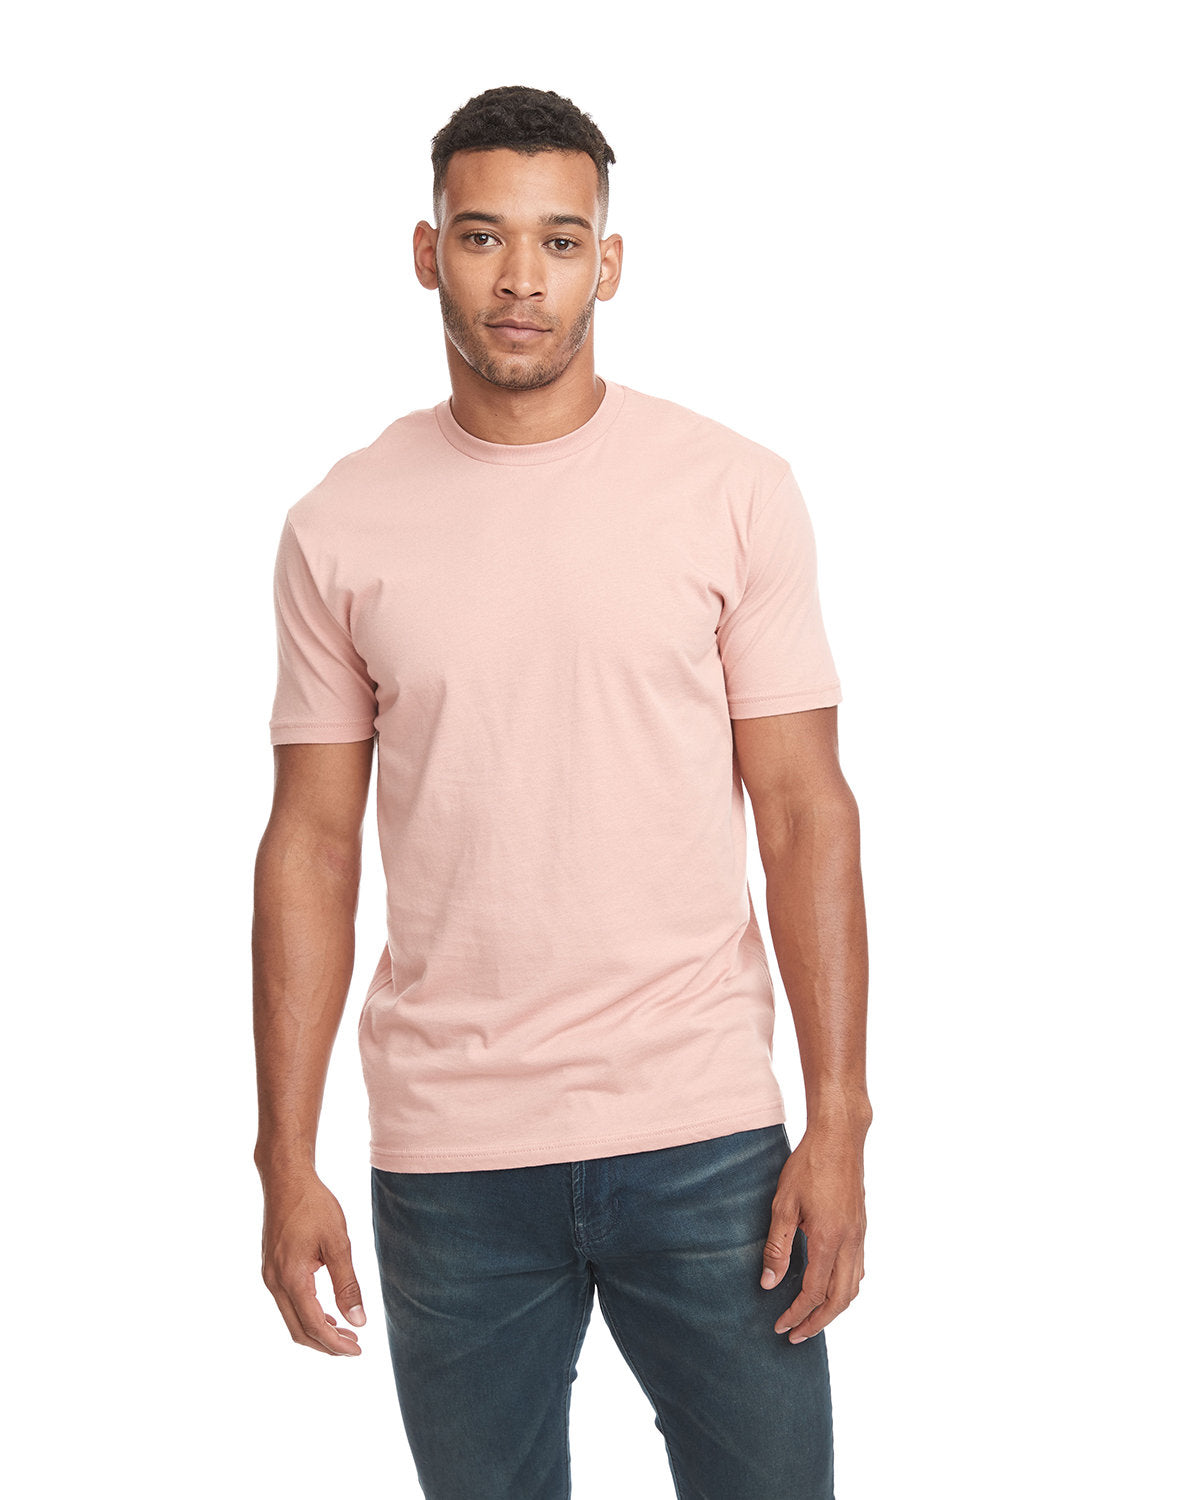 Desert Pink 100% Cotton Next Level T-shirt 